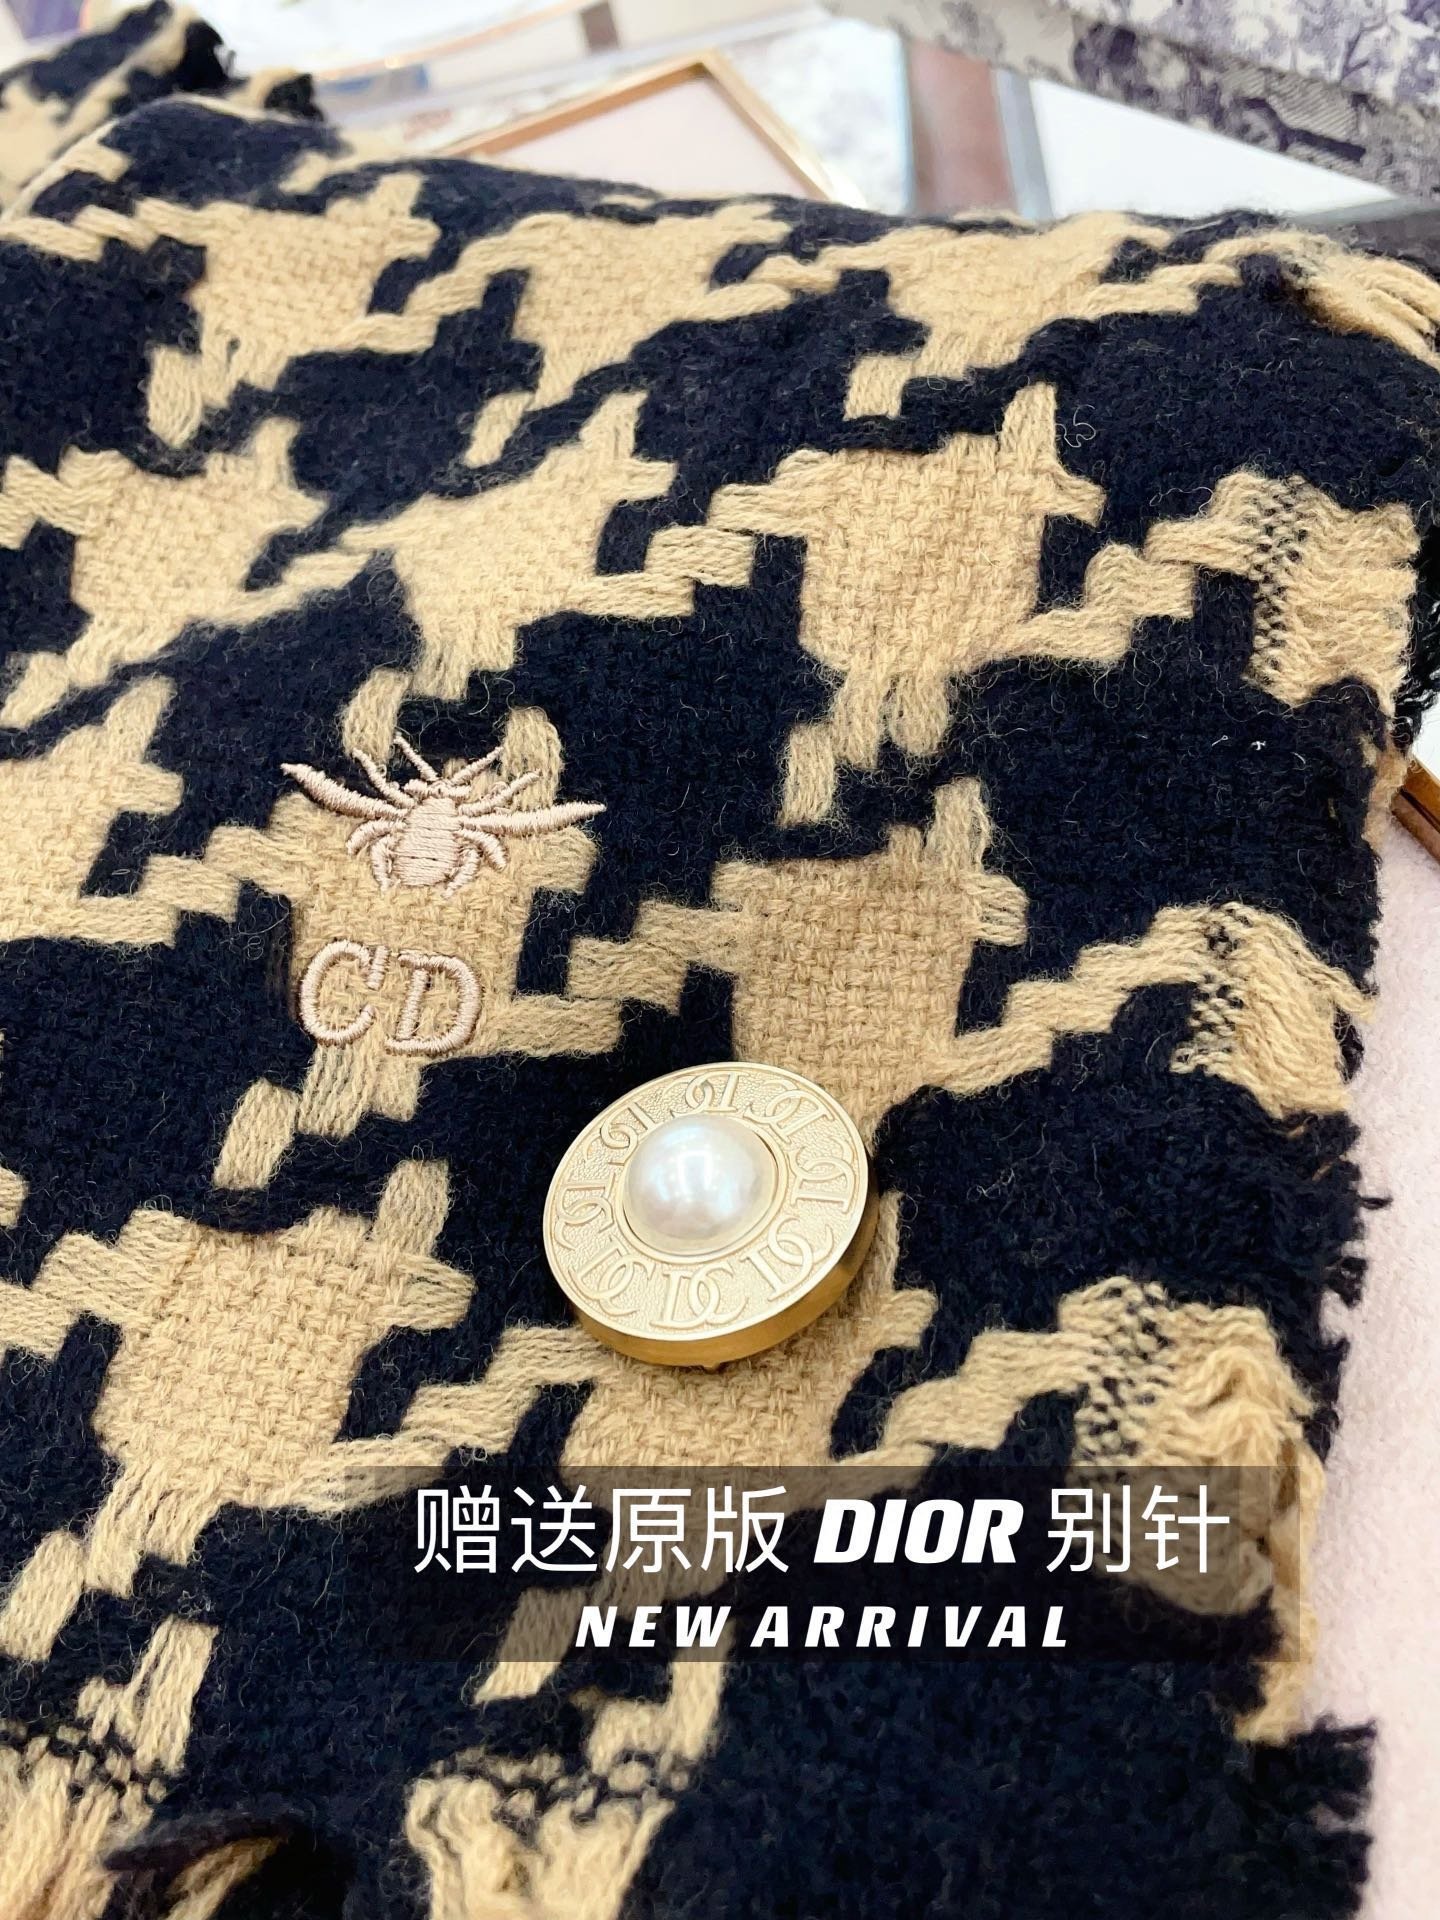 配送胸针Dior超美新款大千鸟围巾！超级推荐入手！质感好货！Dior主打的千鸟纹理据说超难买哦！！我们的